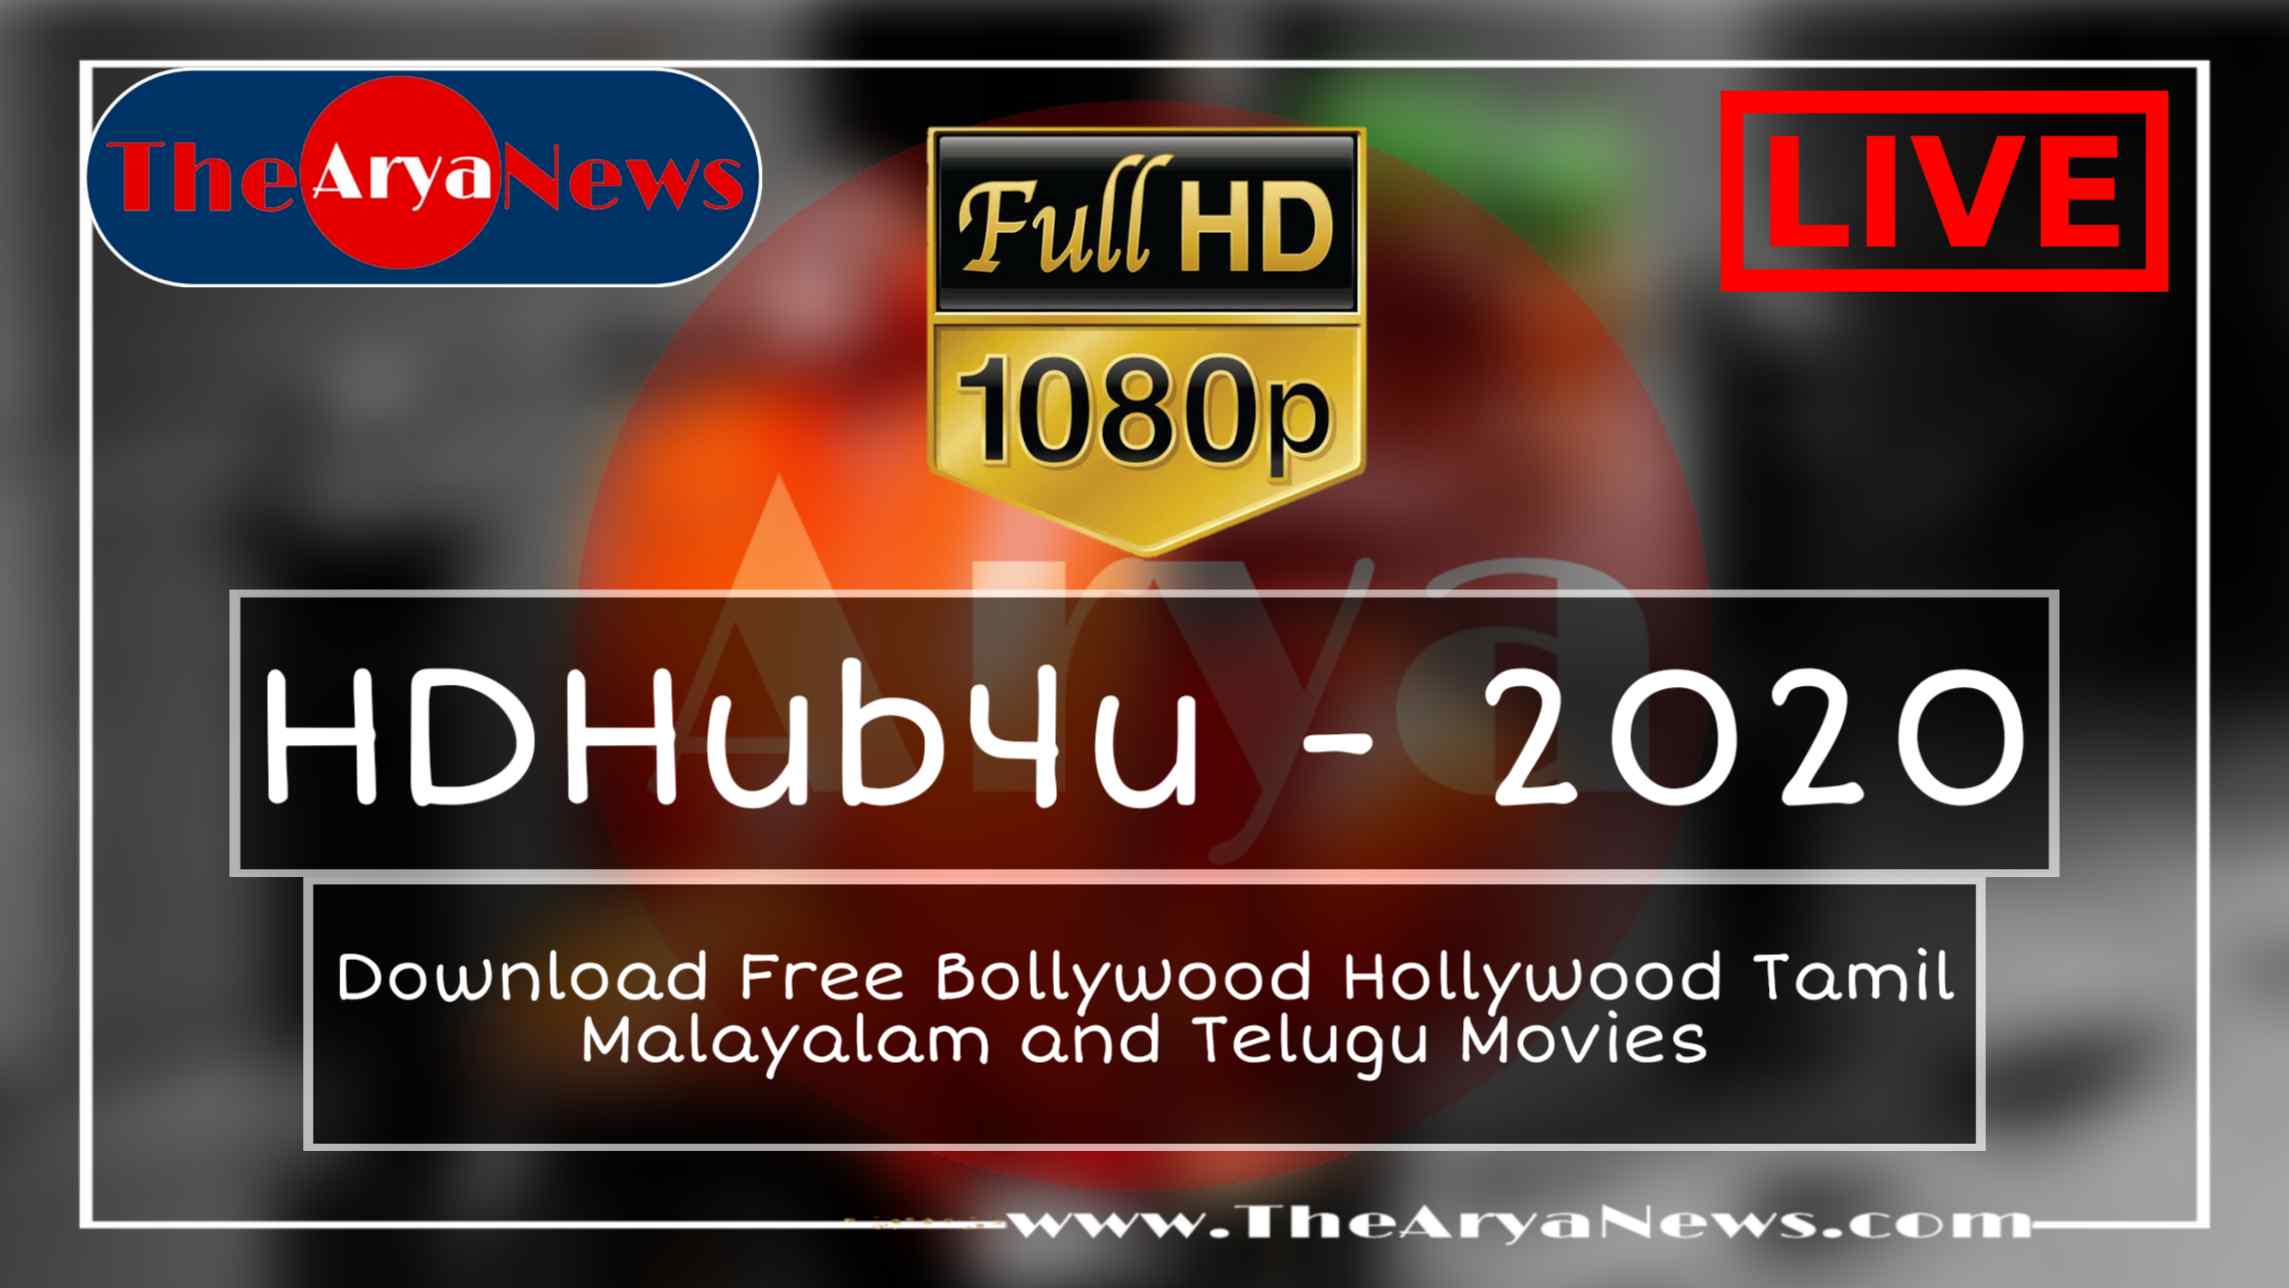 HDHub4u 2020 » Free Download All BollyWood, HollyWood Movies